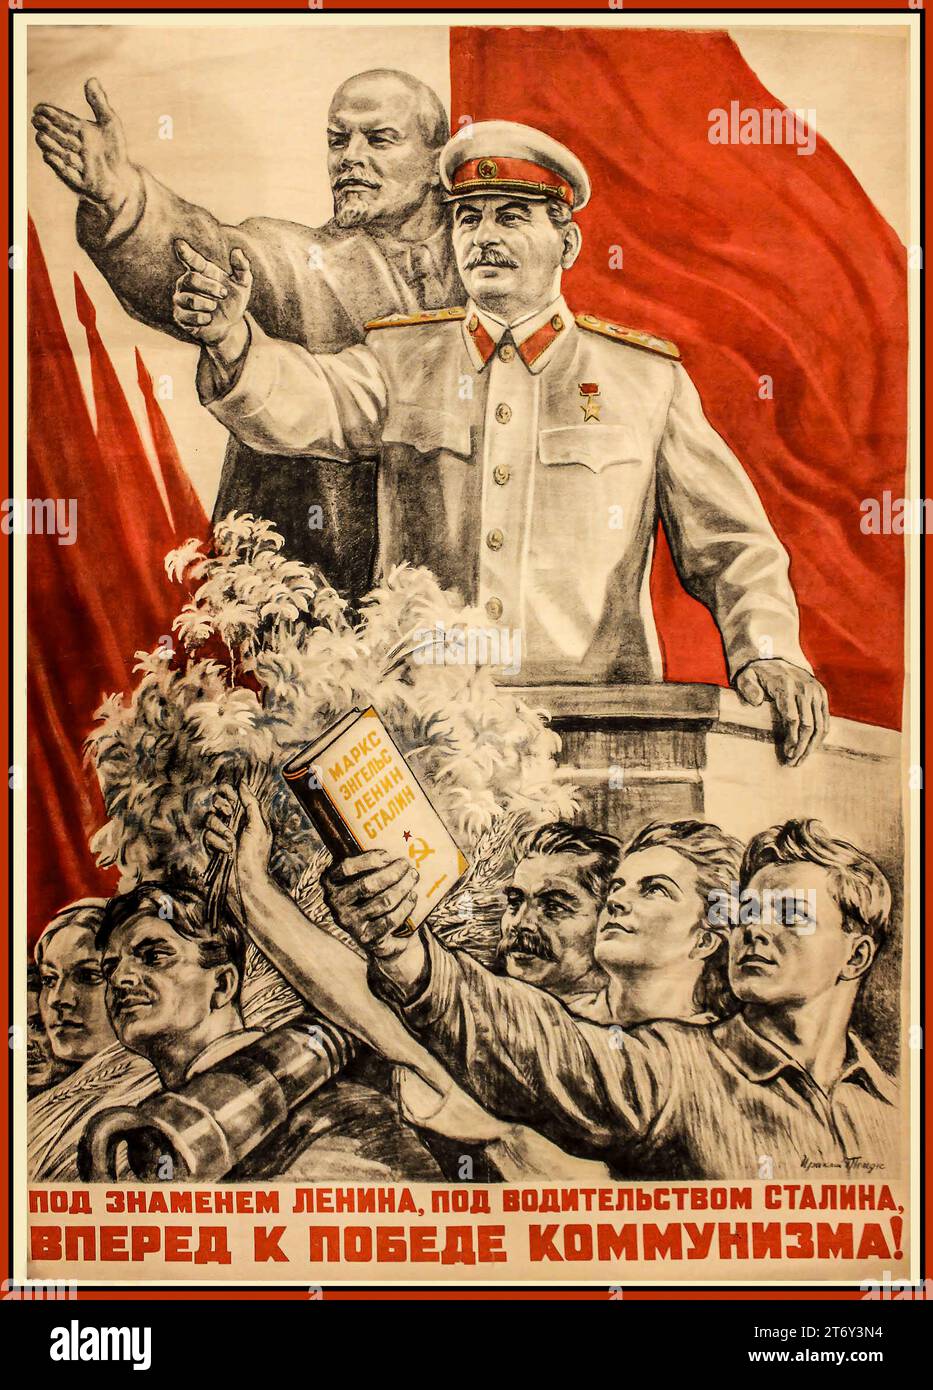 Affiche de propagande soviétique russe de l'URSS mettant en vedette Staline et Lénine. La légende dit "sous la bannière de Lénine, sous la direction de Staline AVANT LA VICTOIRE DU COMMUNISME ! Sous la bannière de Lénine, sous la direction de Staline – à la victoire du communisme dans notre pays ! Ivan Mikhailovitch Shagin Banque D'Images